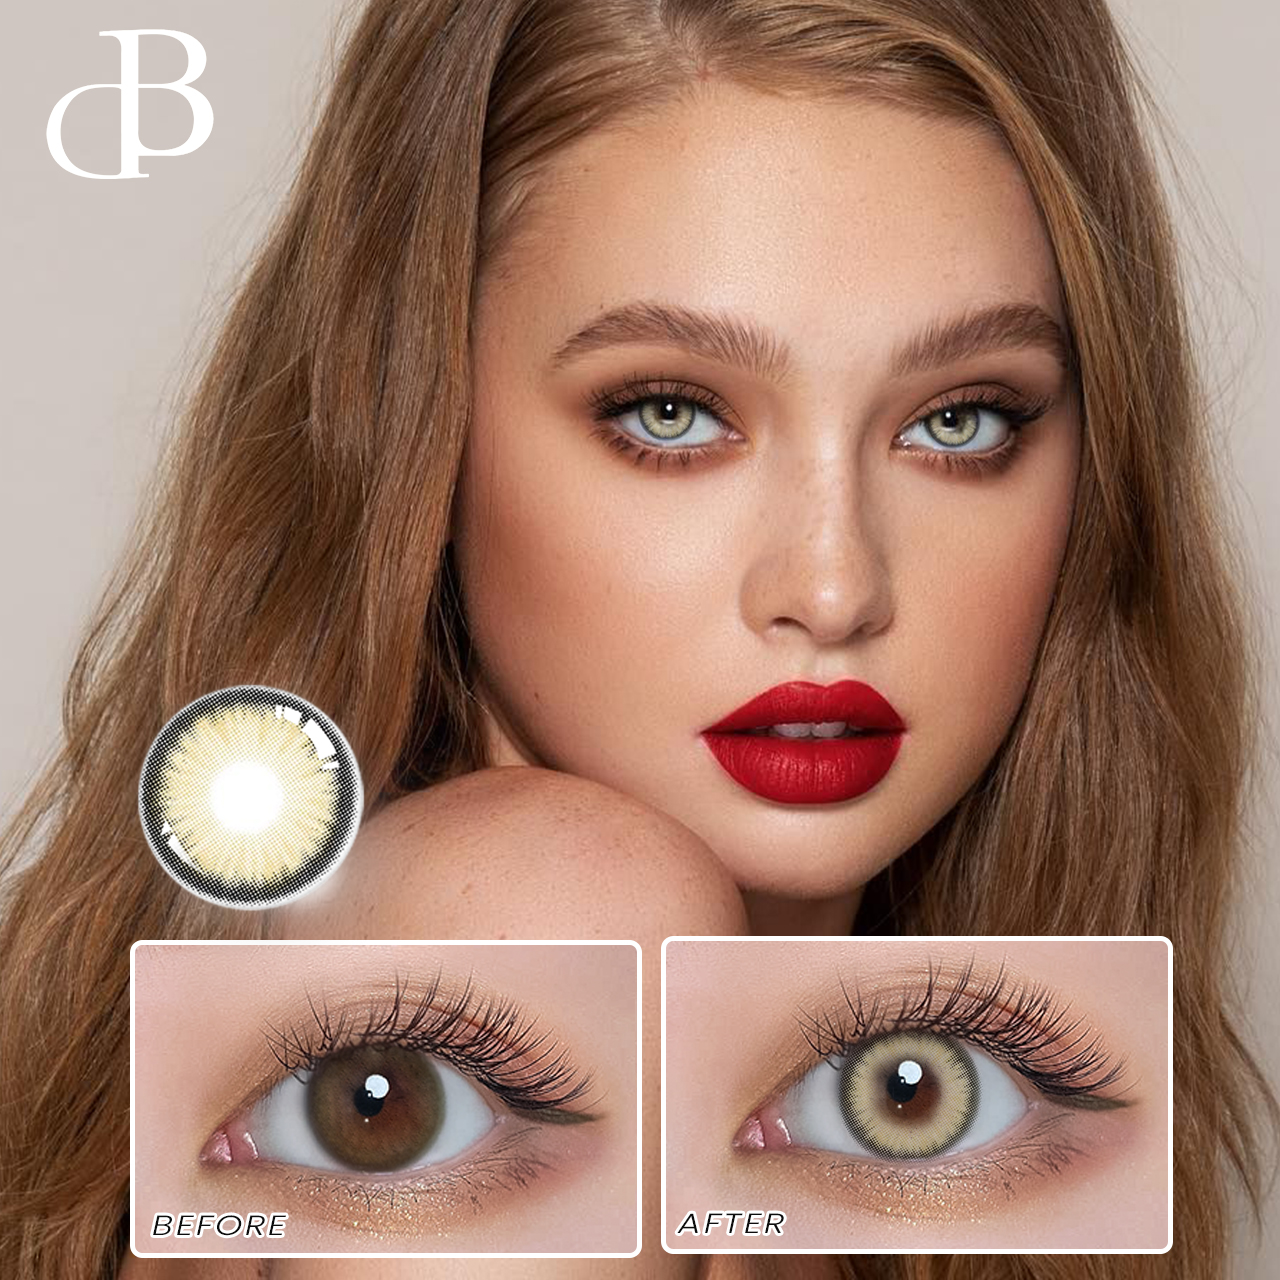 DBeyes cała wyprzedaż Lenseme Cloud kolorowe soczewki kontaktowe najwyższej jakości soczewki